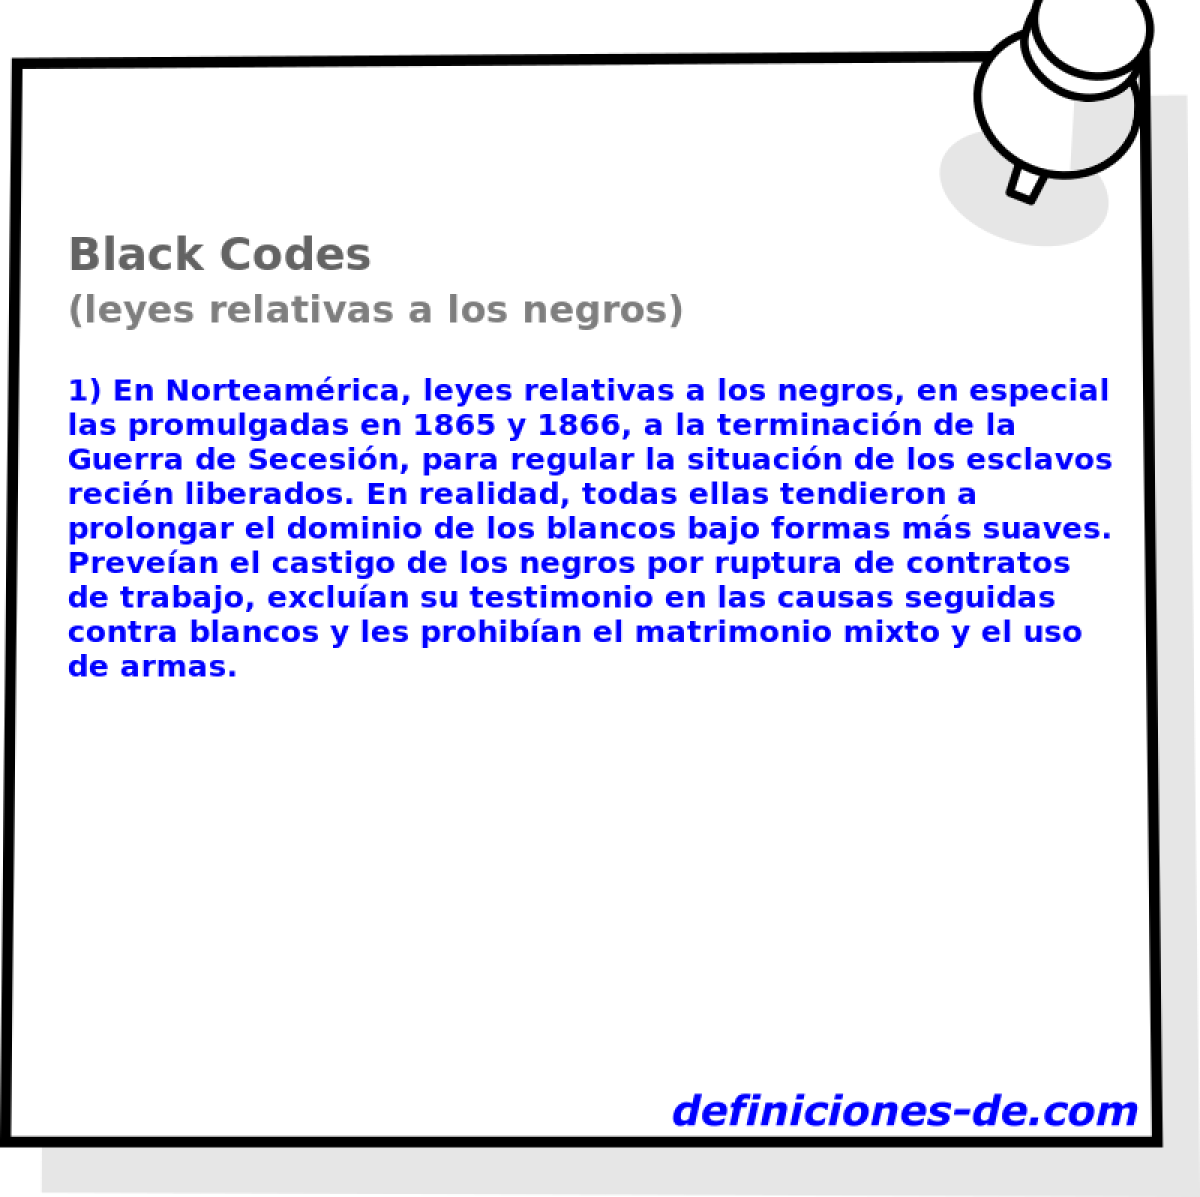 Black Codes (leyes relativas a los negros)